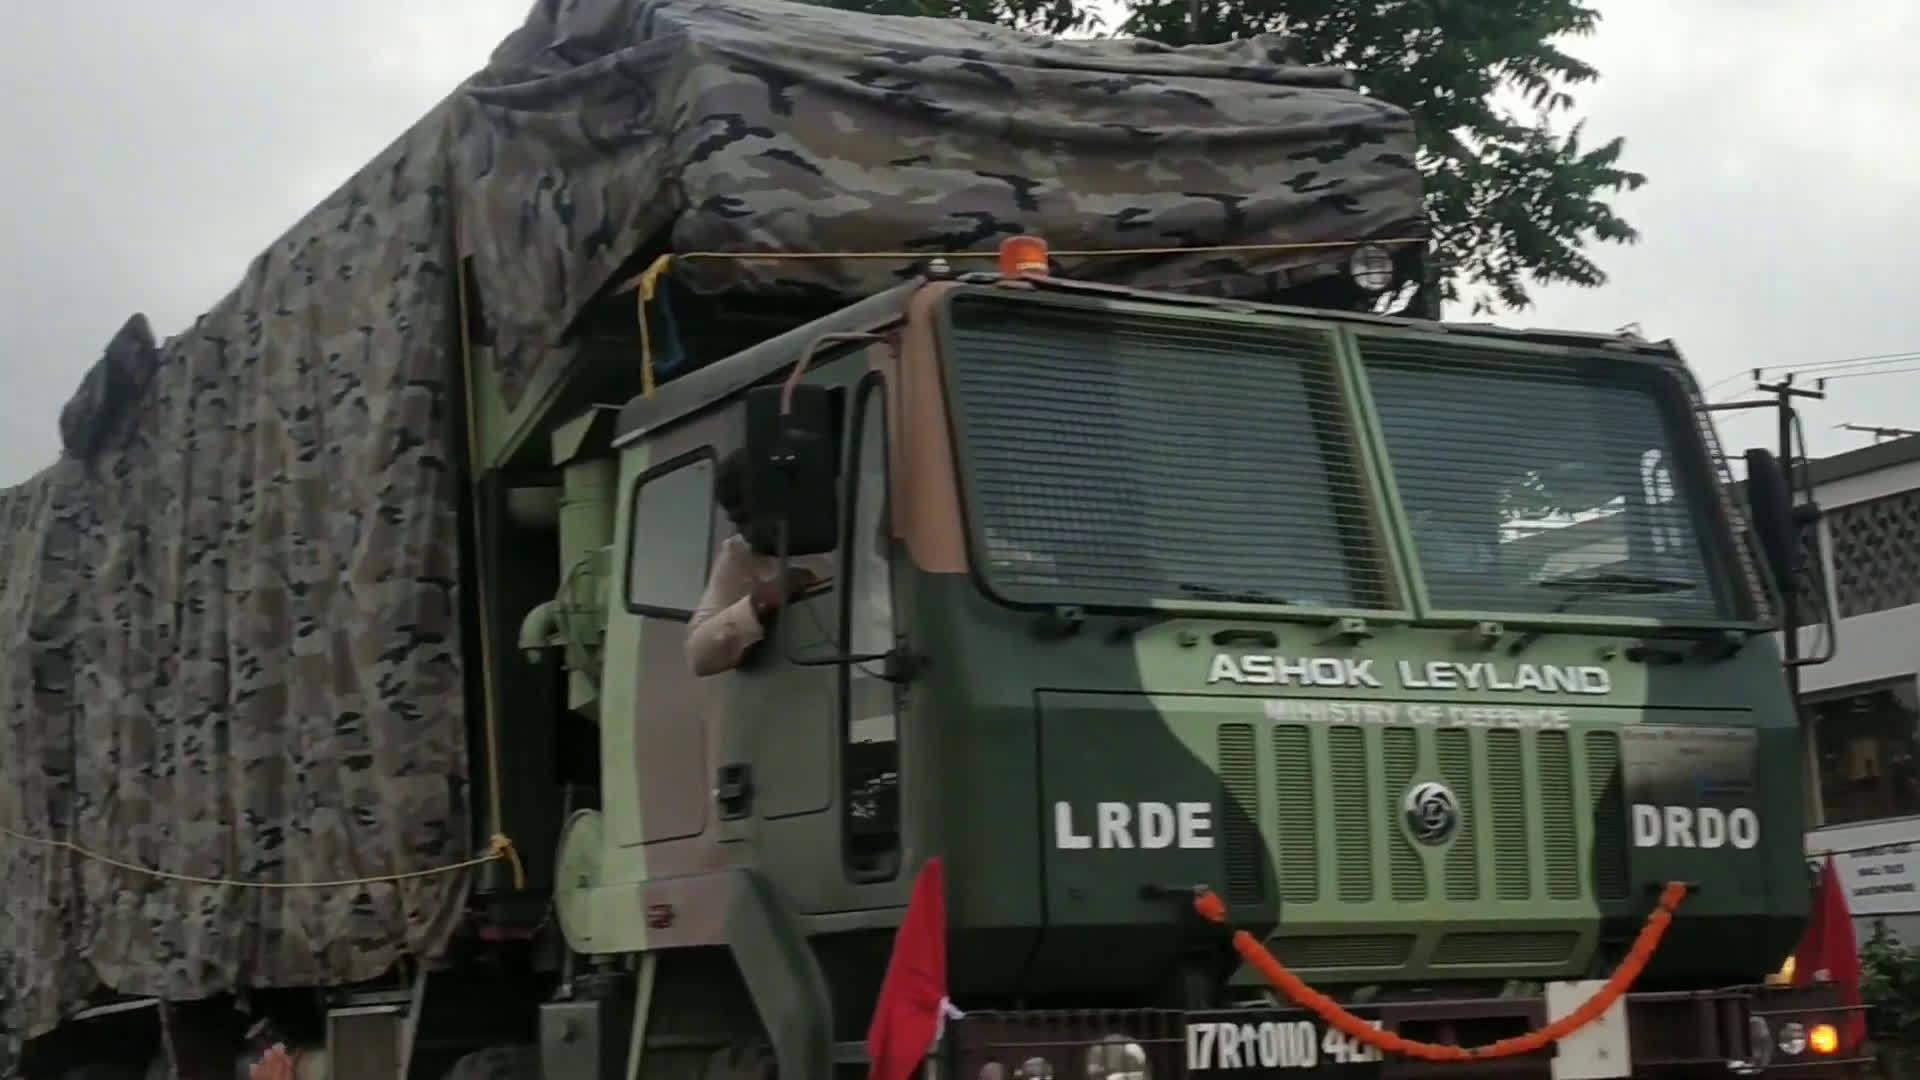 印度军用卡车图片